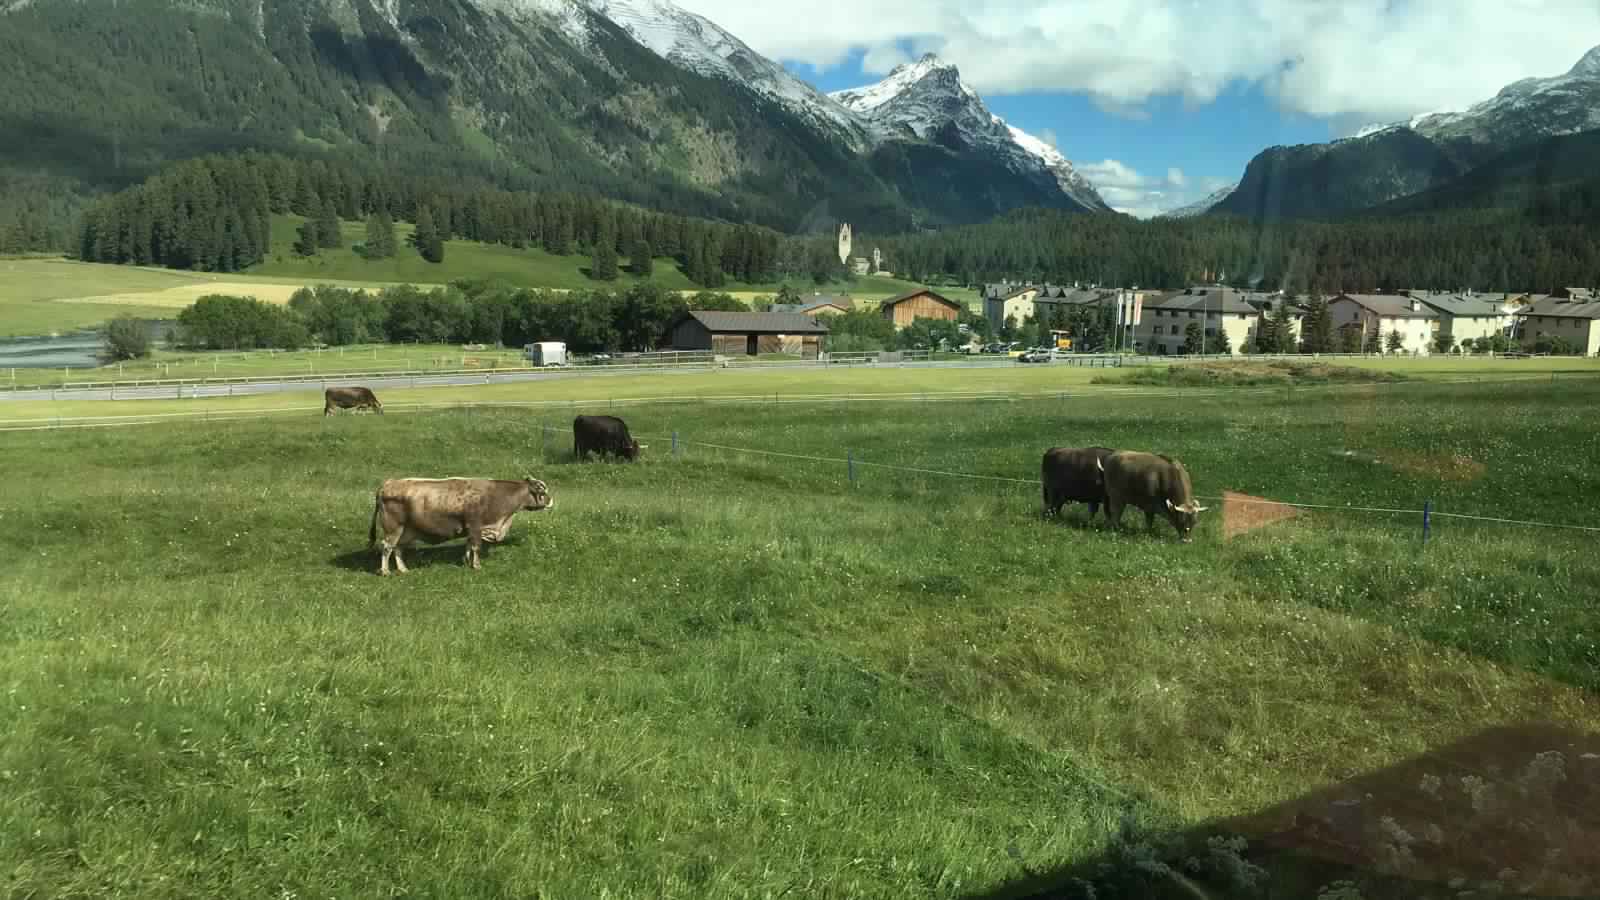 "بالصور" جولة مع قطار جلاسير إكسبريس عبر جبال اﻷلب السويسرية 5